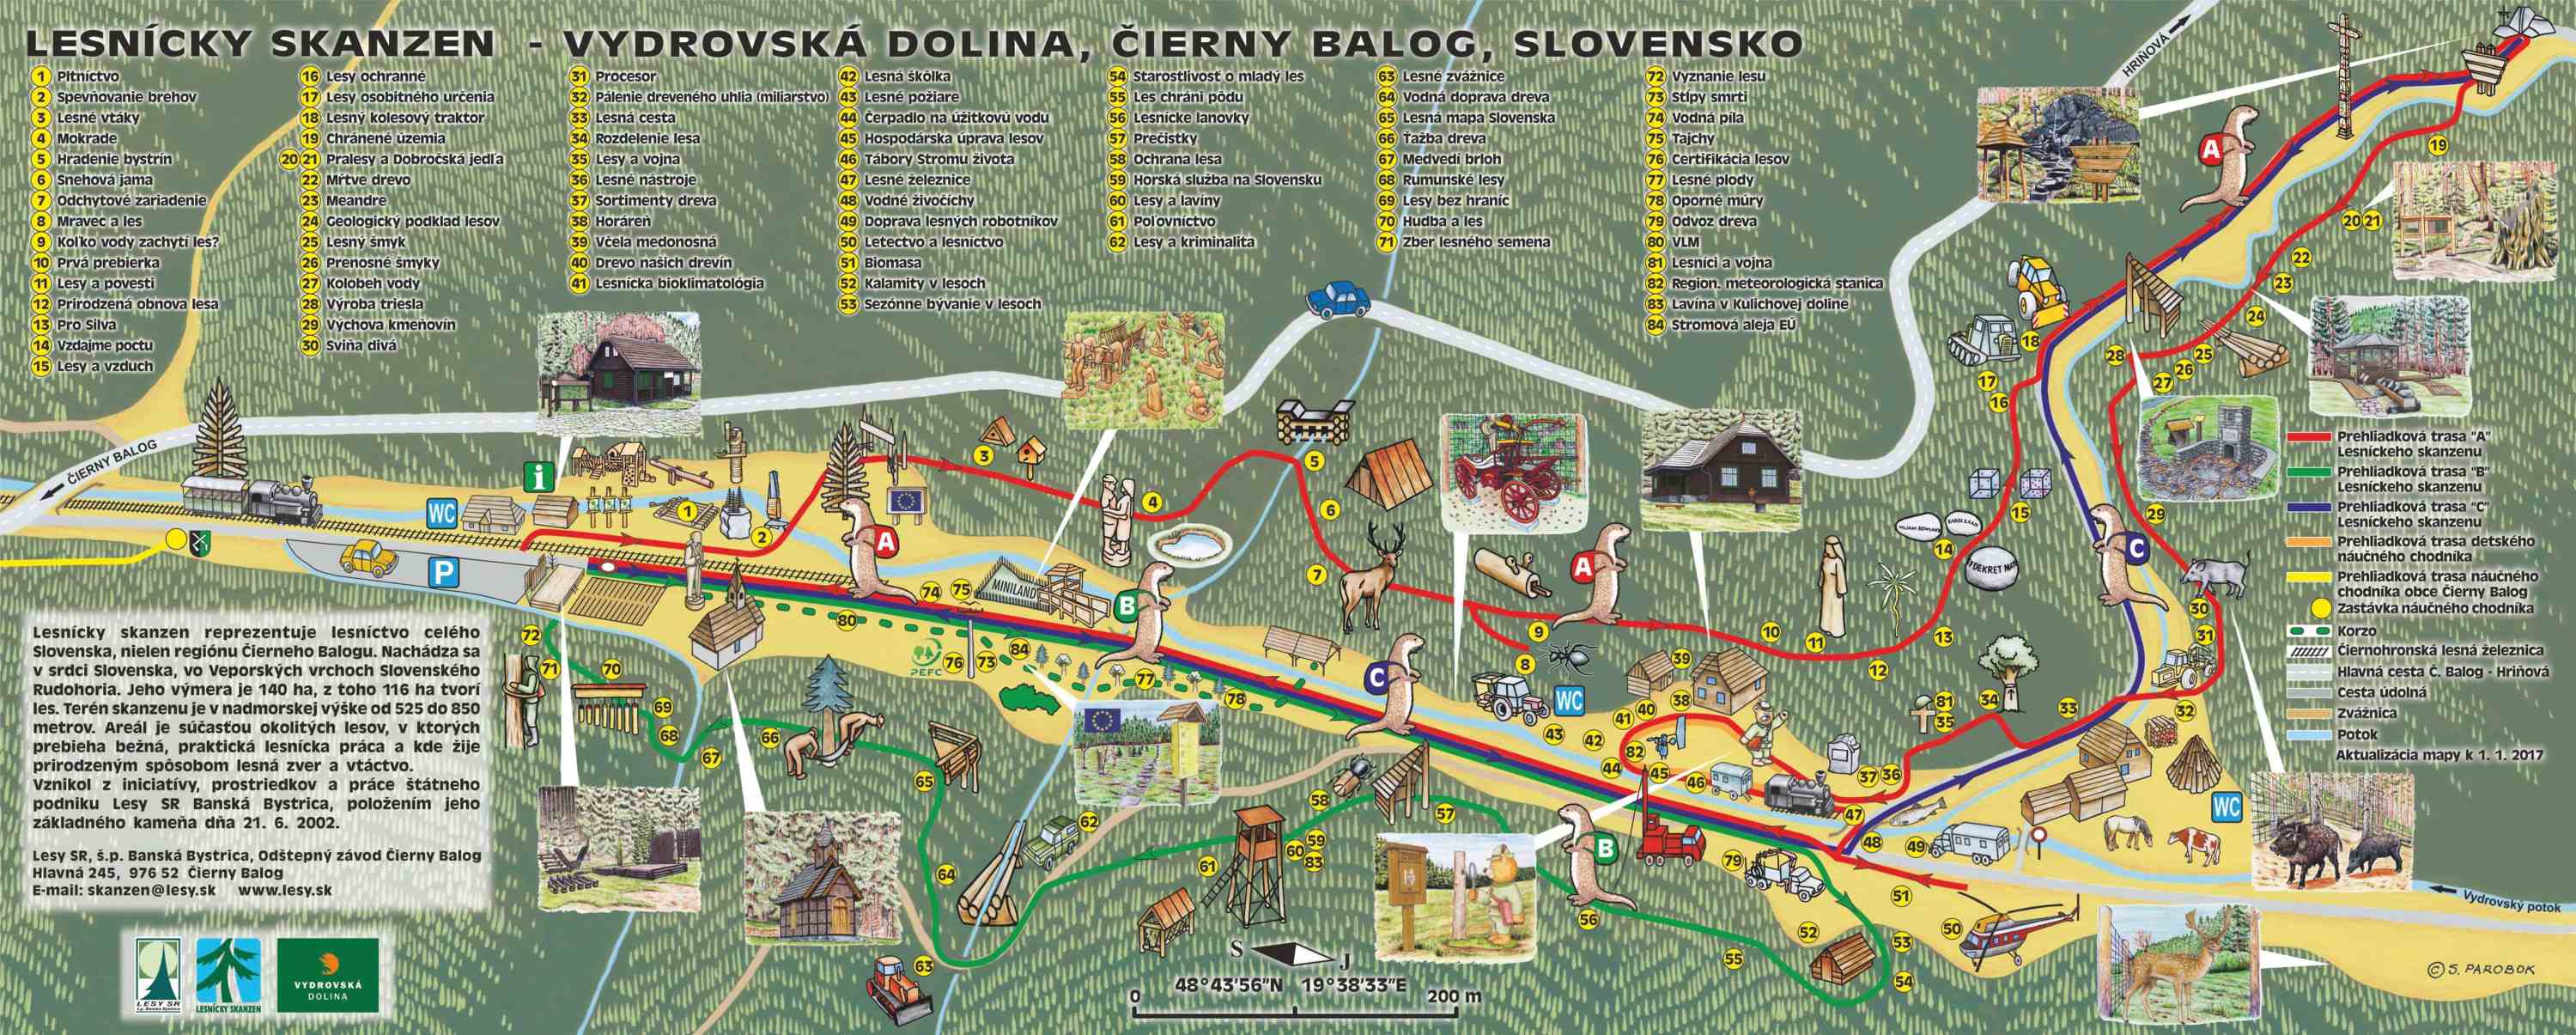 mapa-lesnicky-skanzen-1.jpg